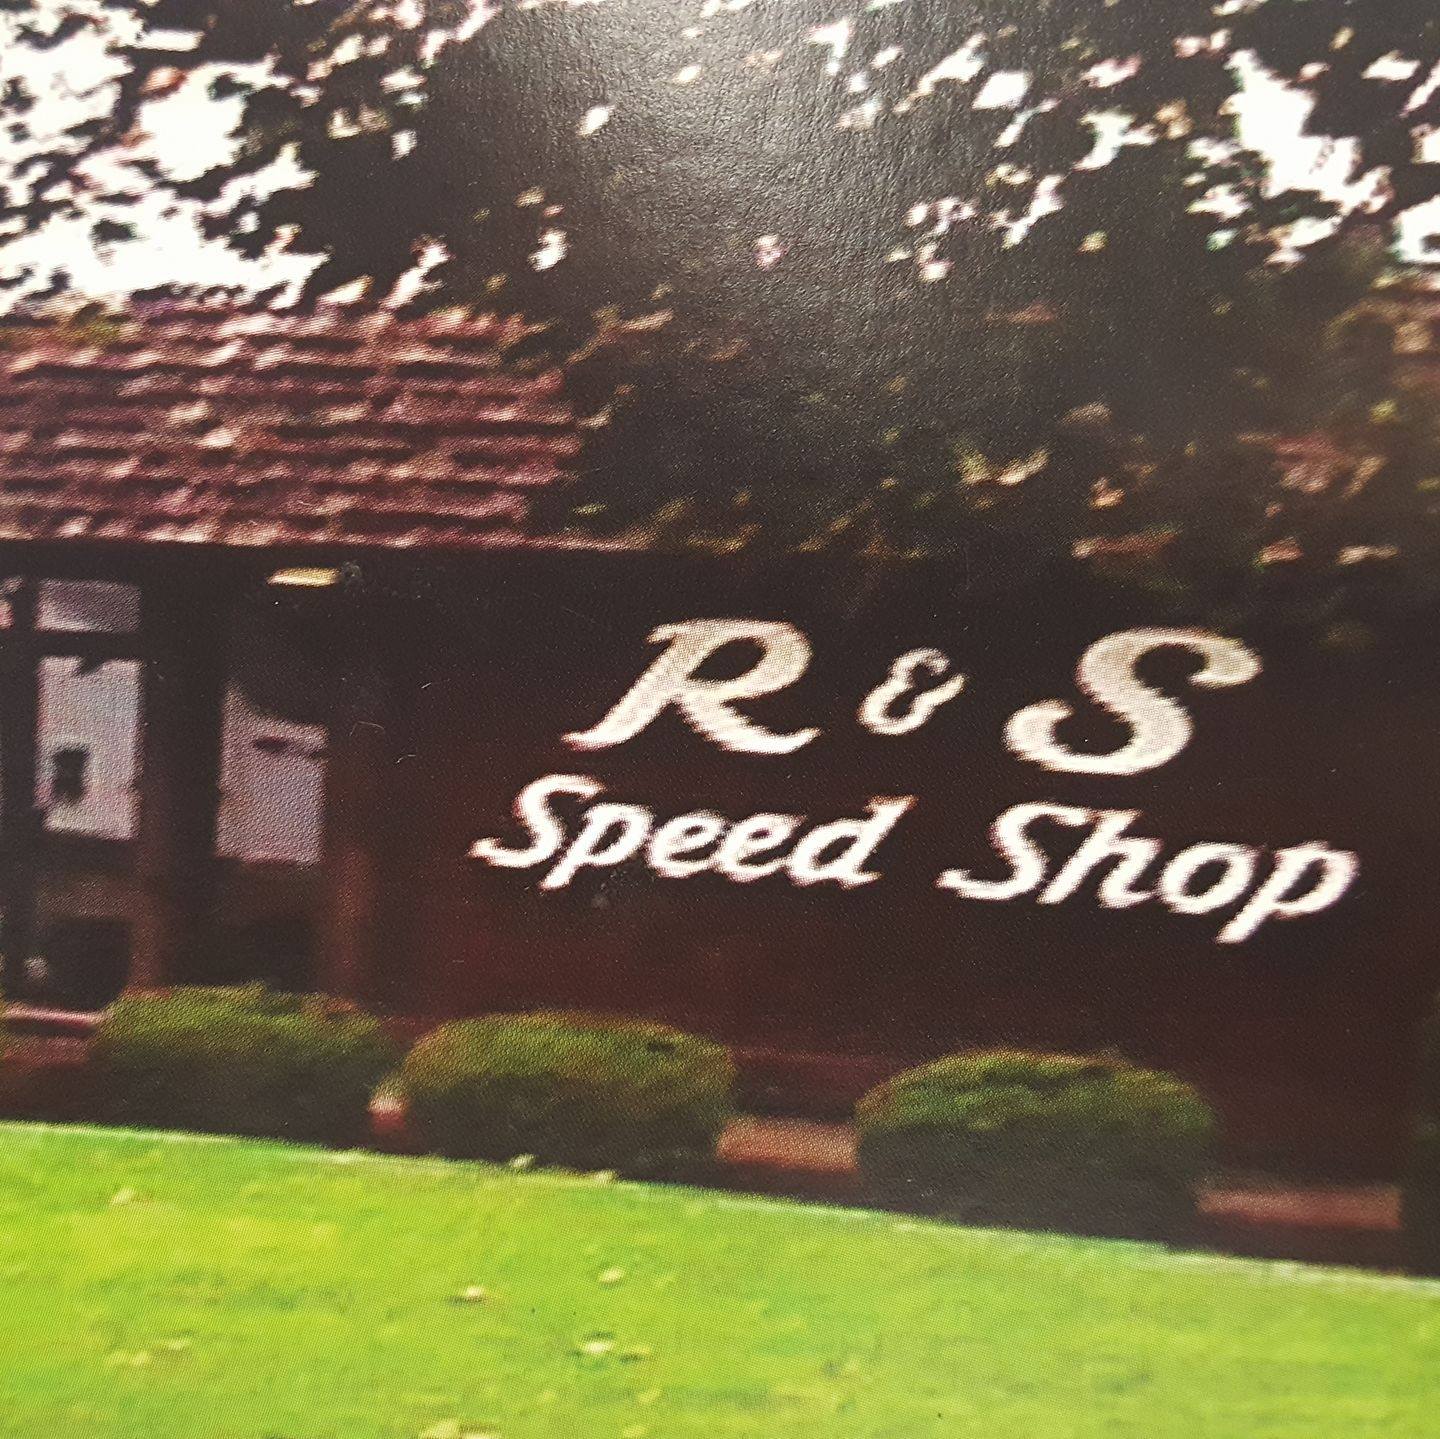 R & S Speed Shop